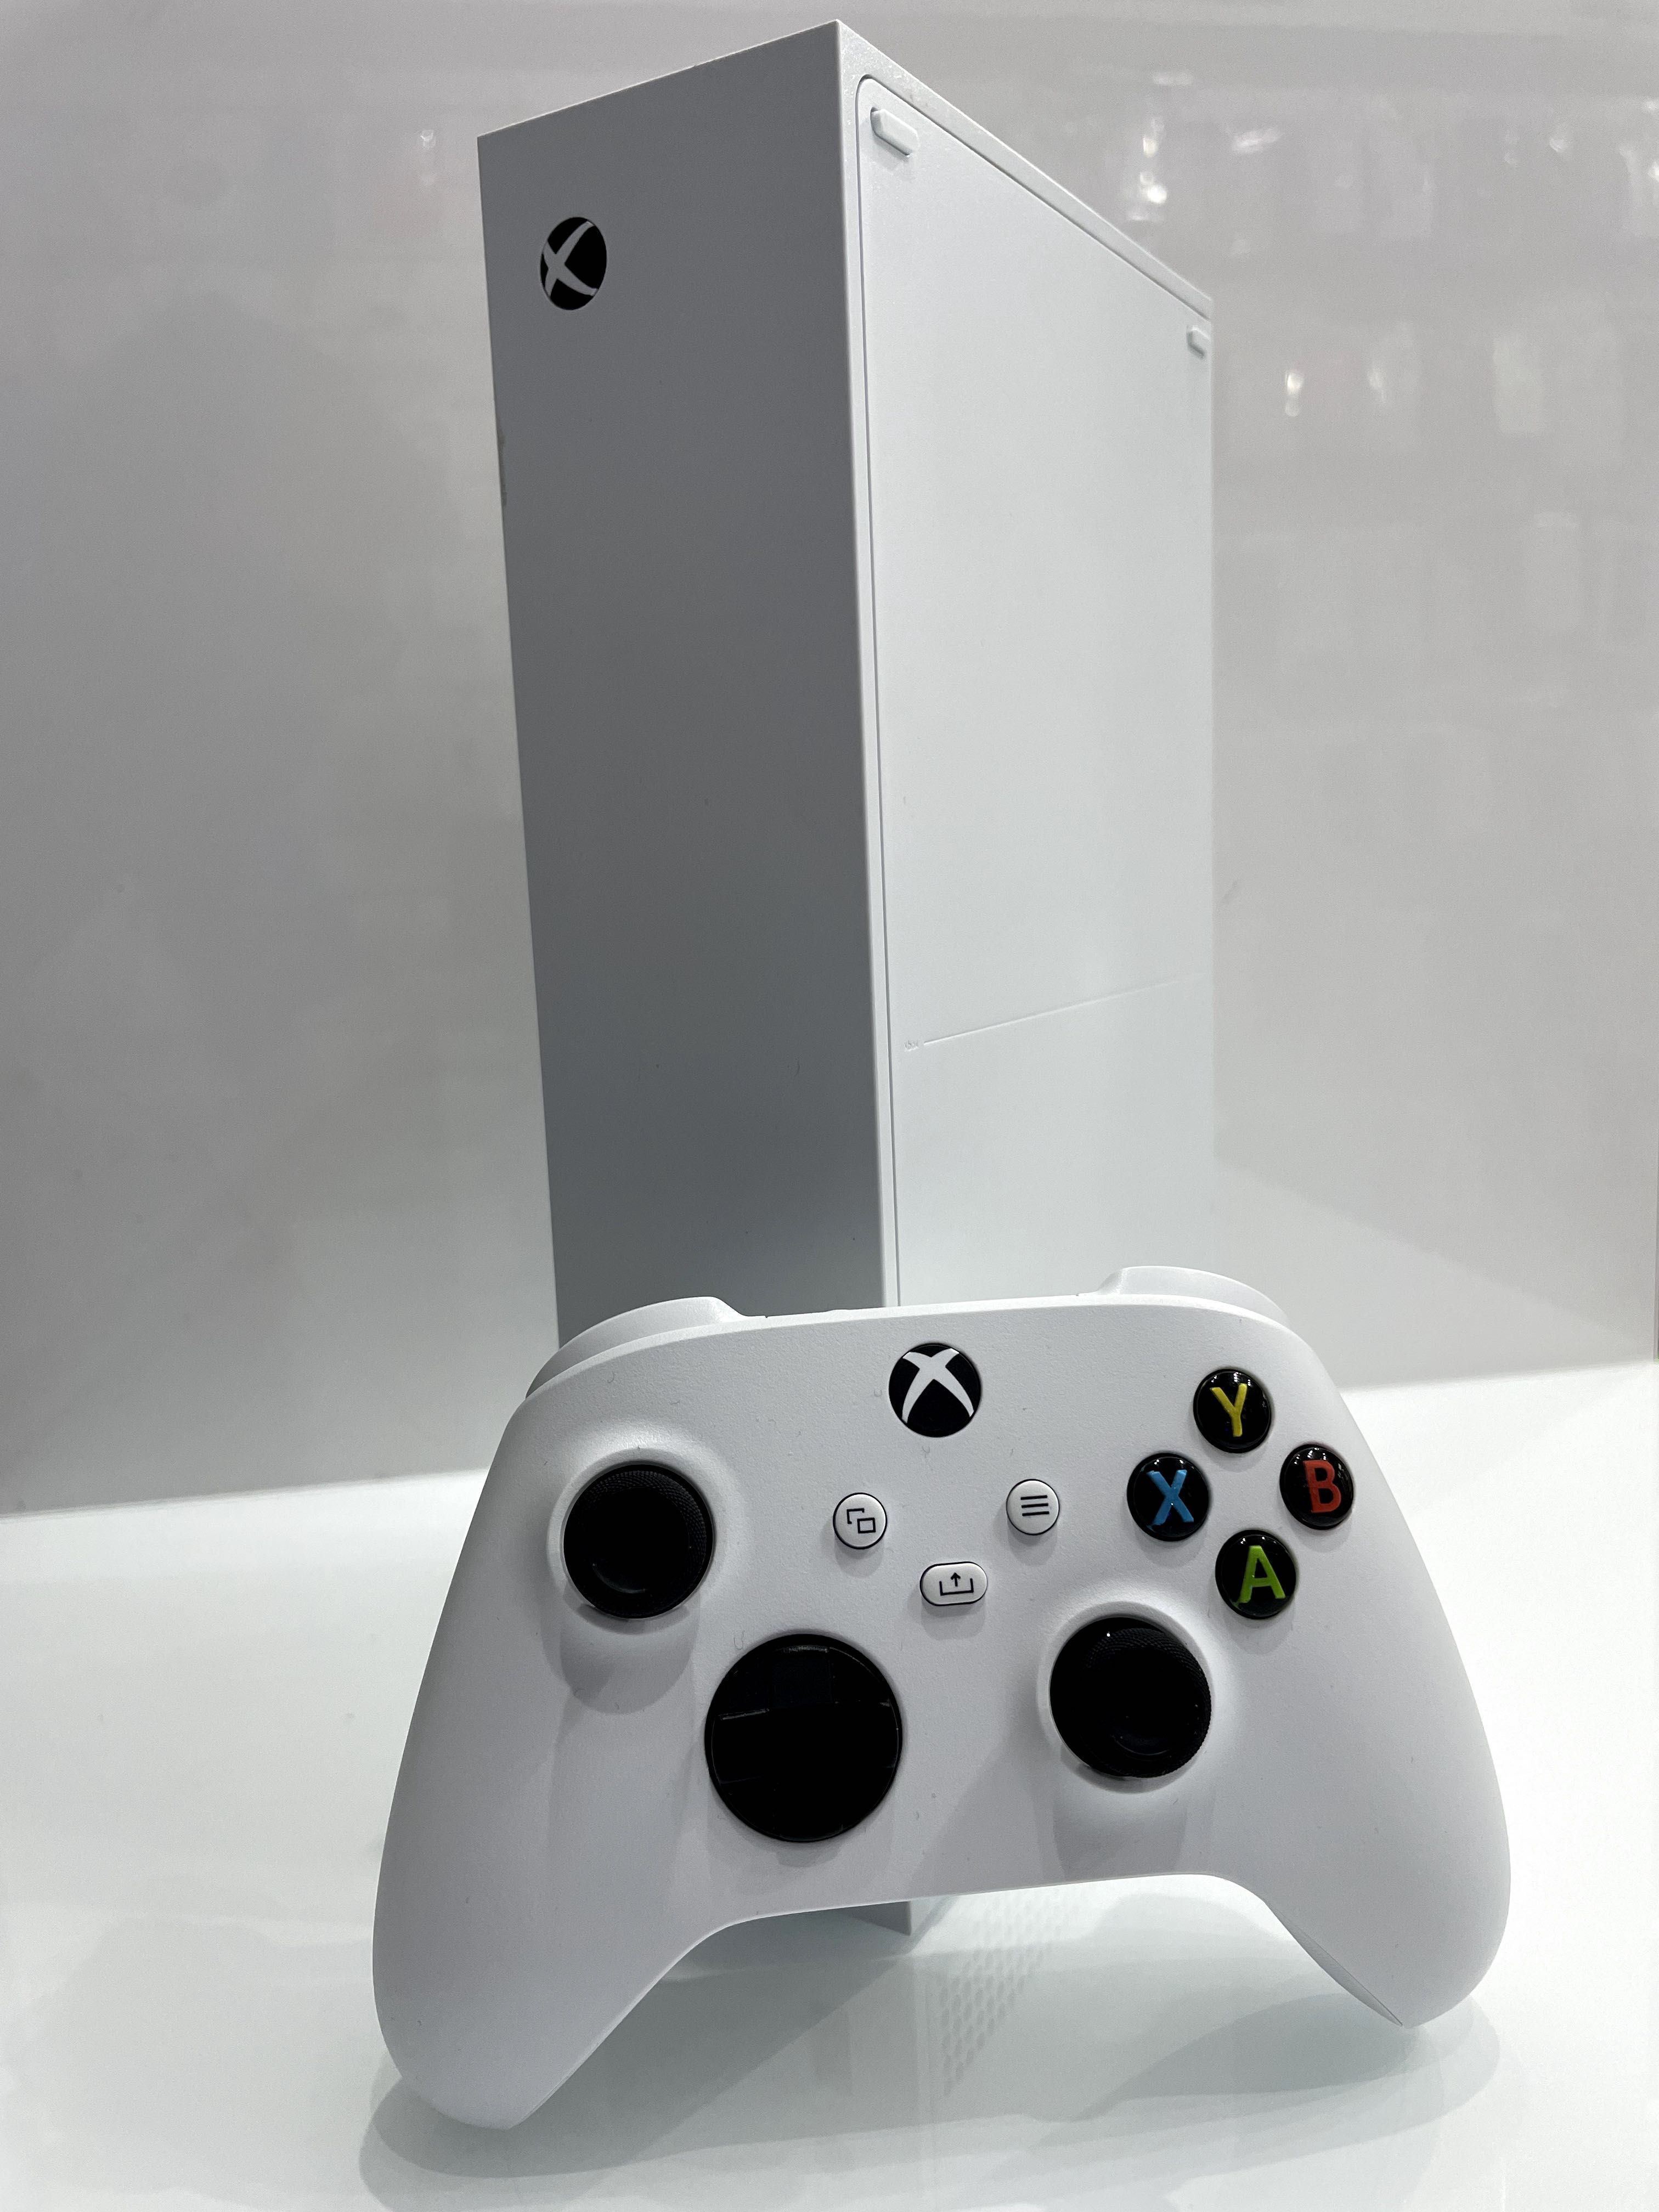 Microsoft Xbox Series S 512GB GW-01.2025r. Zawiercie